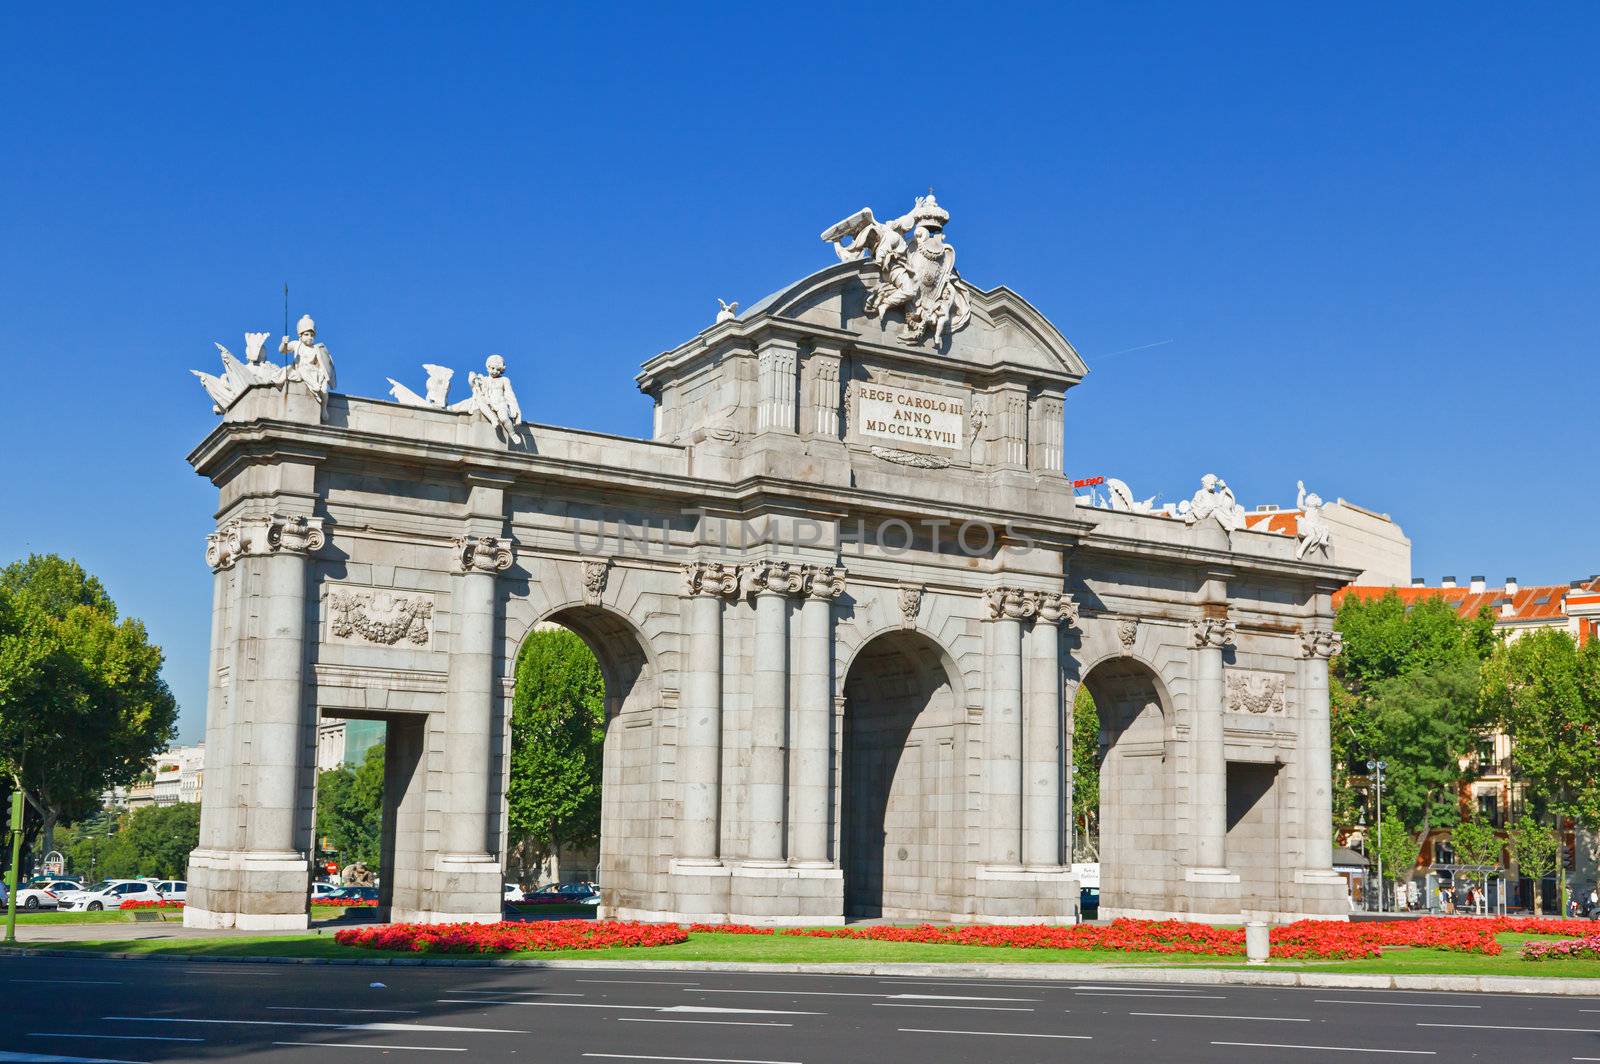 The Puerta de Alcala in Madrid, Spain